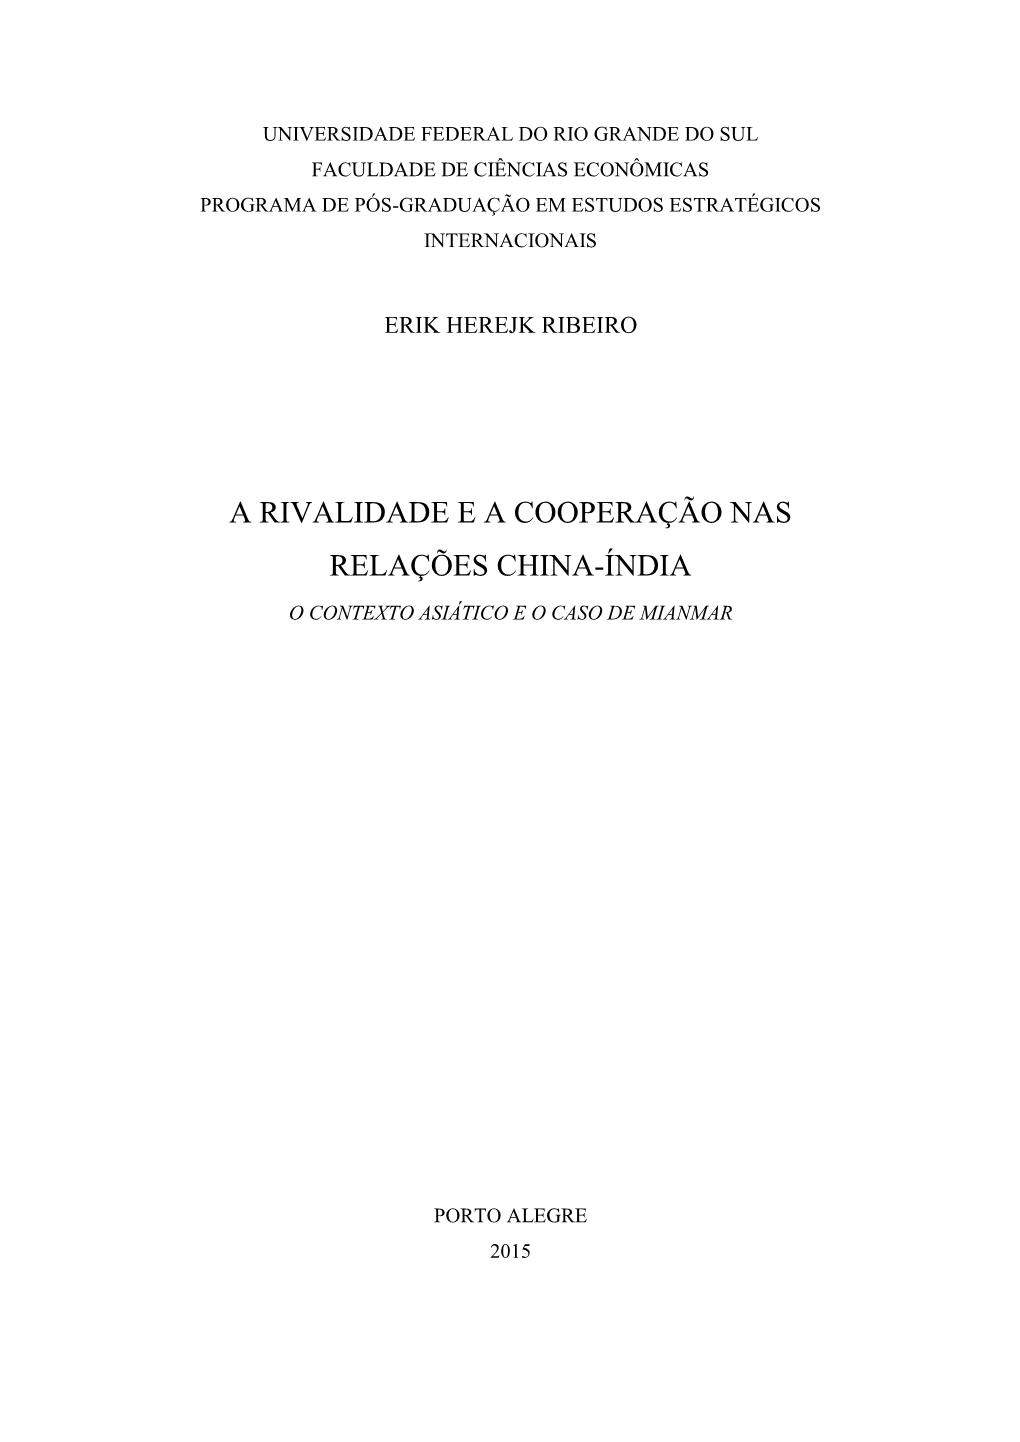 A Rivalidade E a Cooperação Nas Relações China-Índia